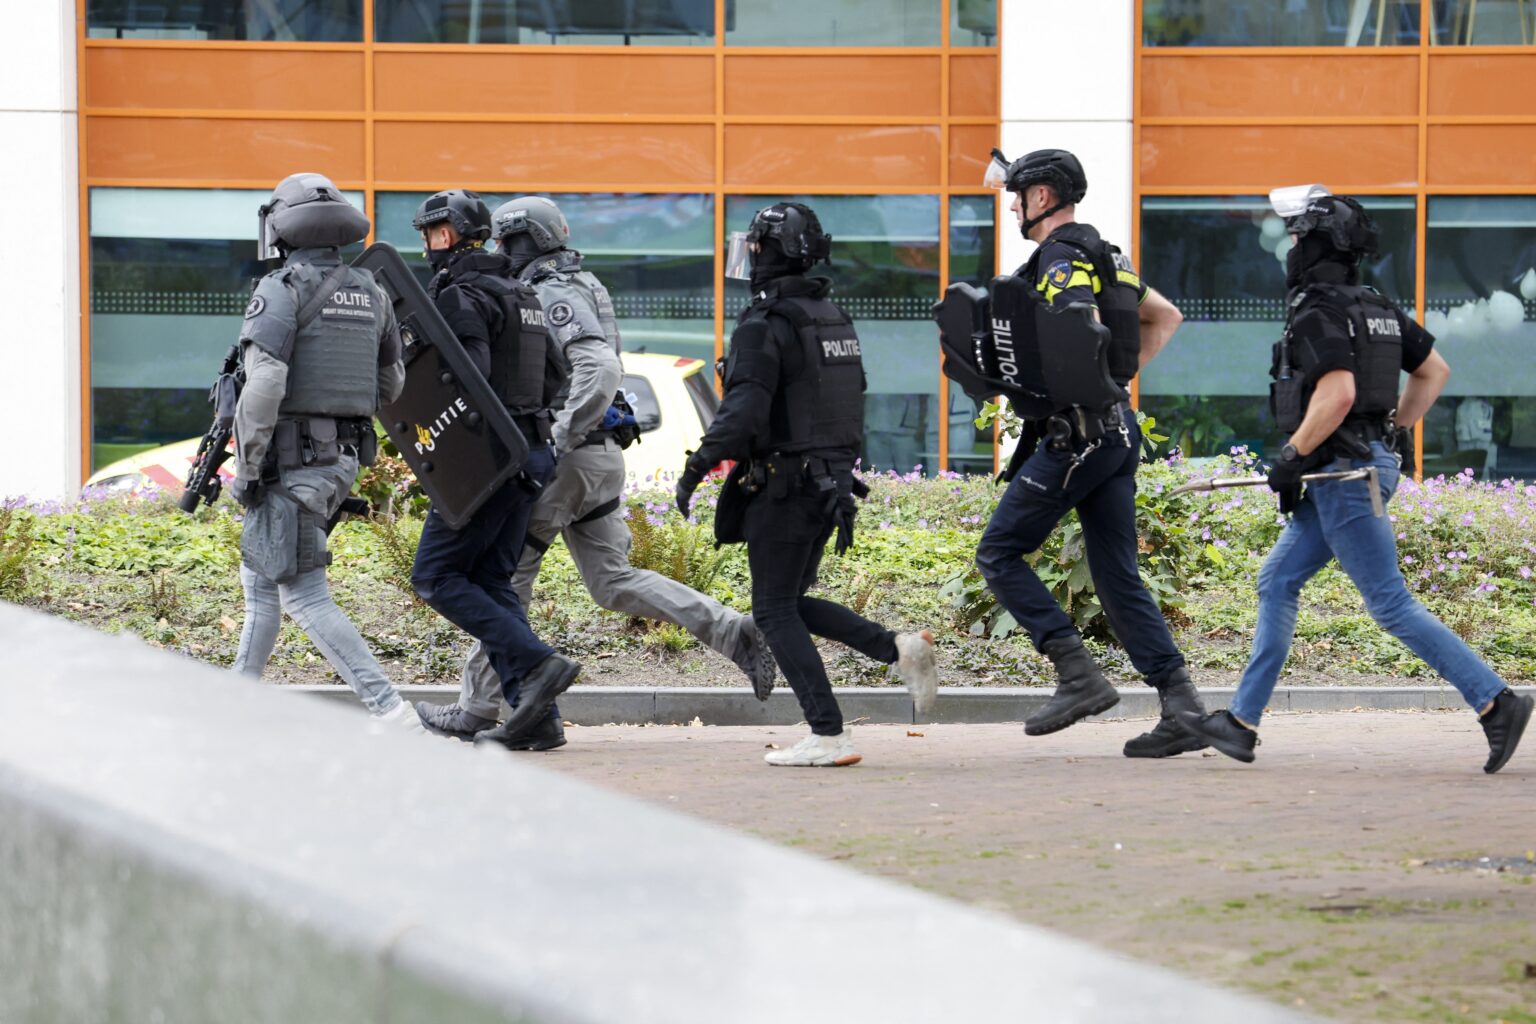 Σοκ στο Ρότερνταμ: Δύο τραυματίες από πυροβολισμούς σε Πανεπιστήμιο